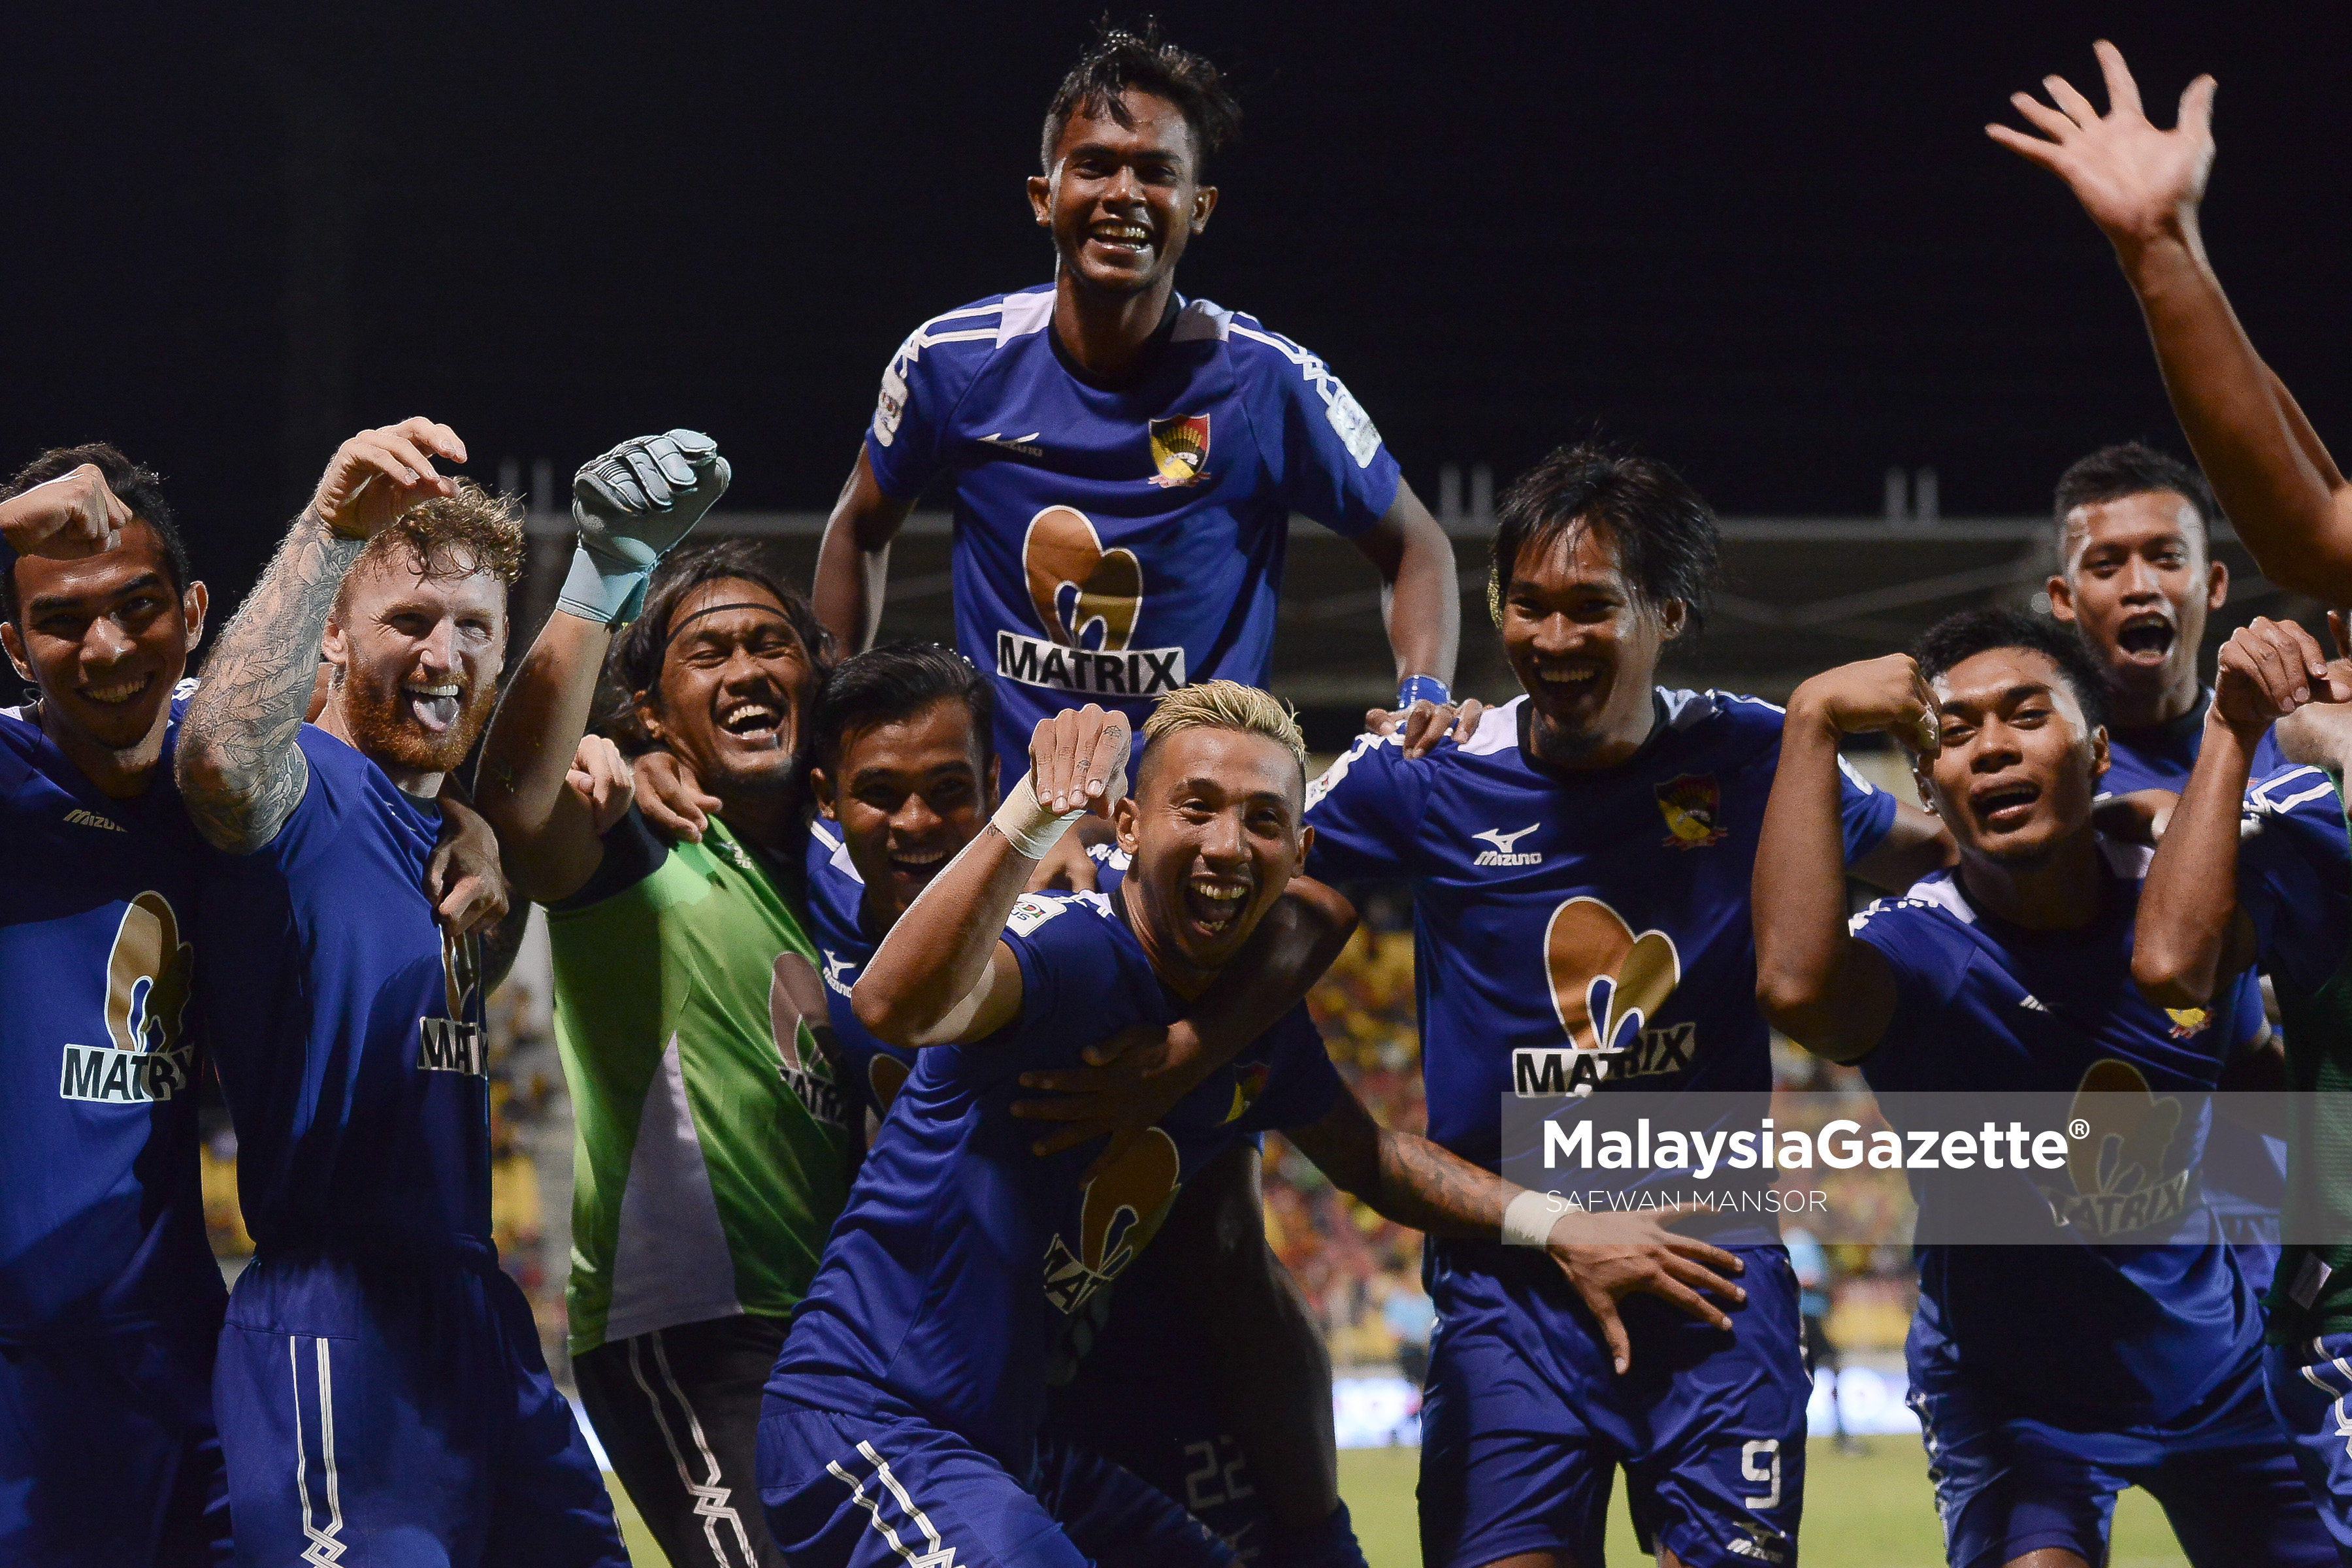 Reaksi pemain N.Sembilan meraikan kemenangan mereka selepas berjaya menewaskan Selangor pada penentuan sepakan penalti dengan keputusan 4-3 di Stadium Majlis Perbandaran Selayang.  foto SAFWAN MANSOR, 14 FEBRUARI 2017